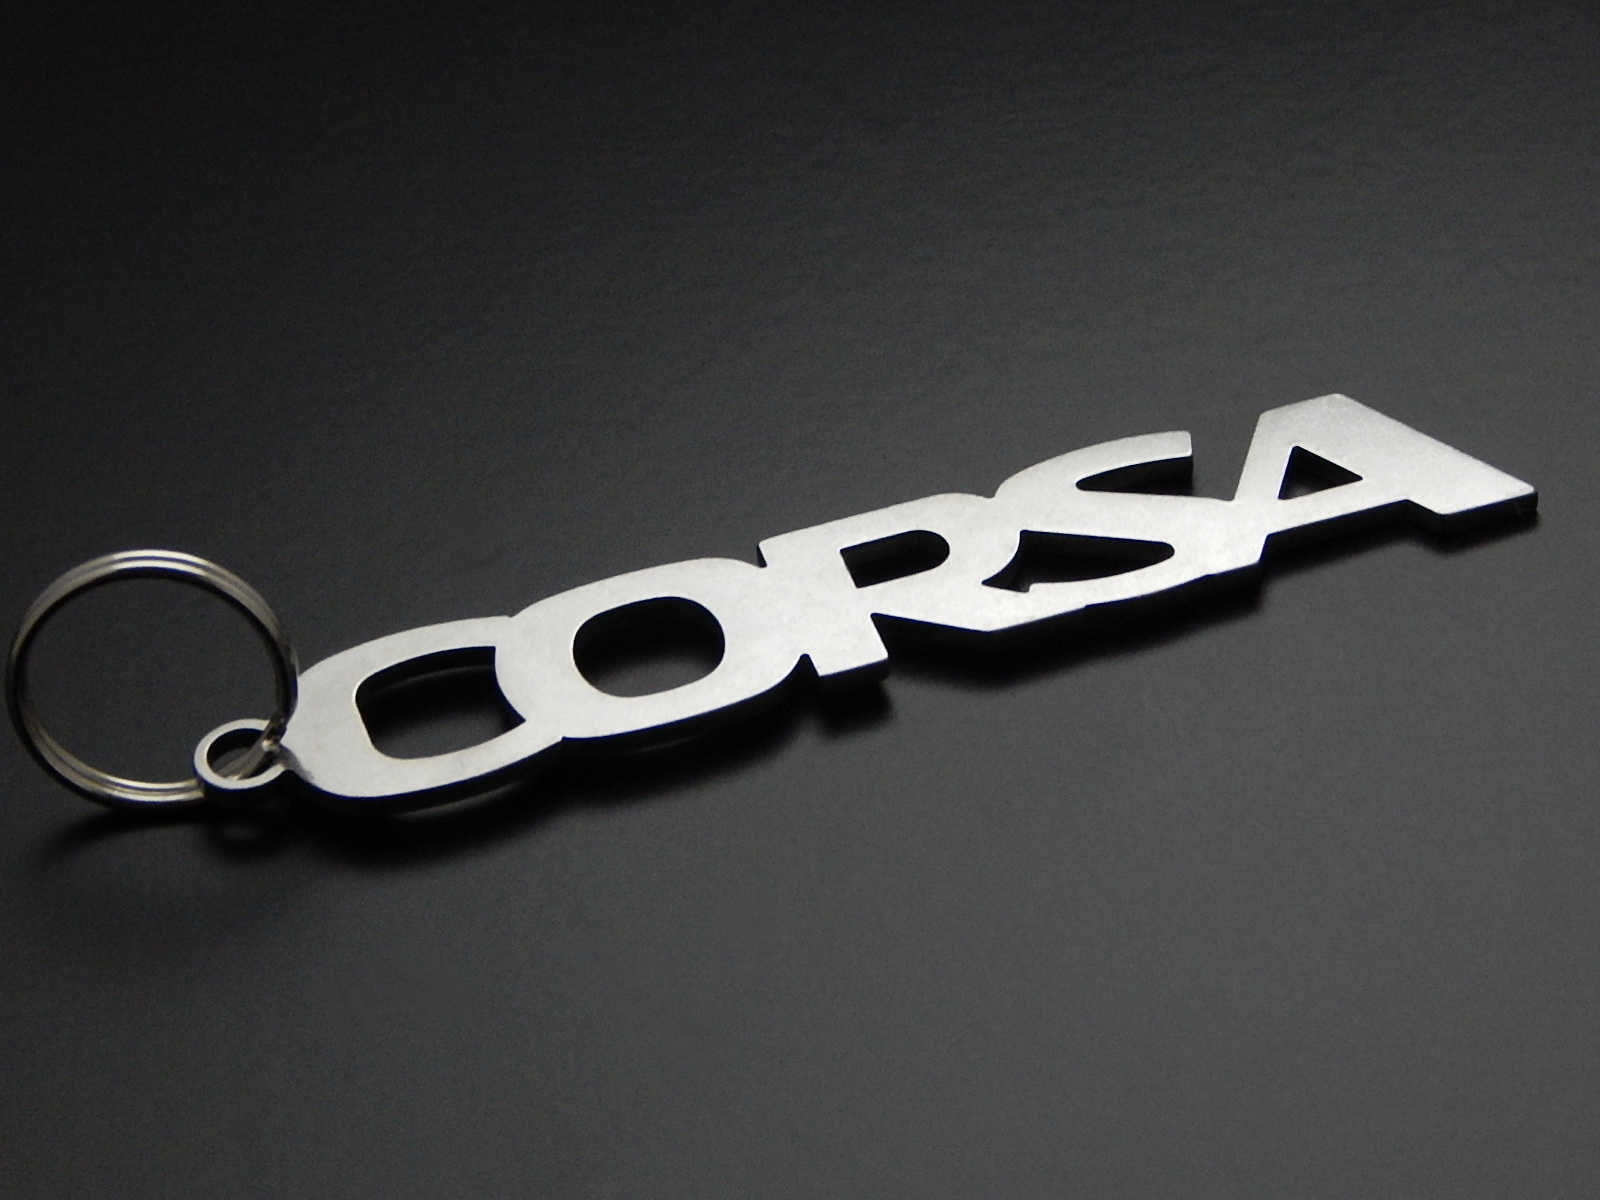 Corsa - DisagrEE - keychain - Schlüsselanhänger